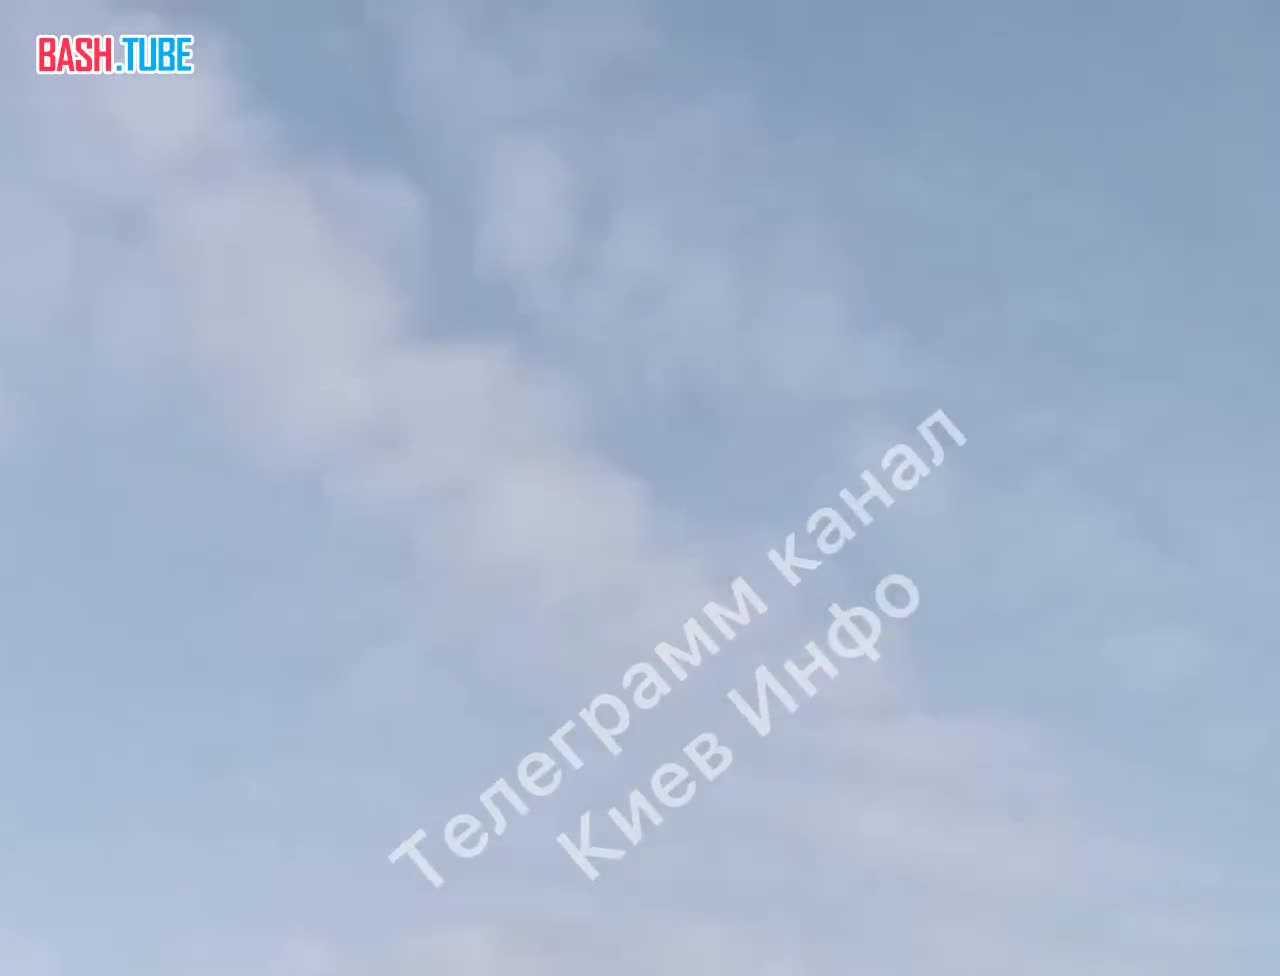 ⁣ Пролет крылатой ракеты над Киевом. На фоне слышна работа ПВО